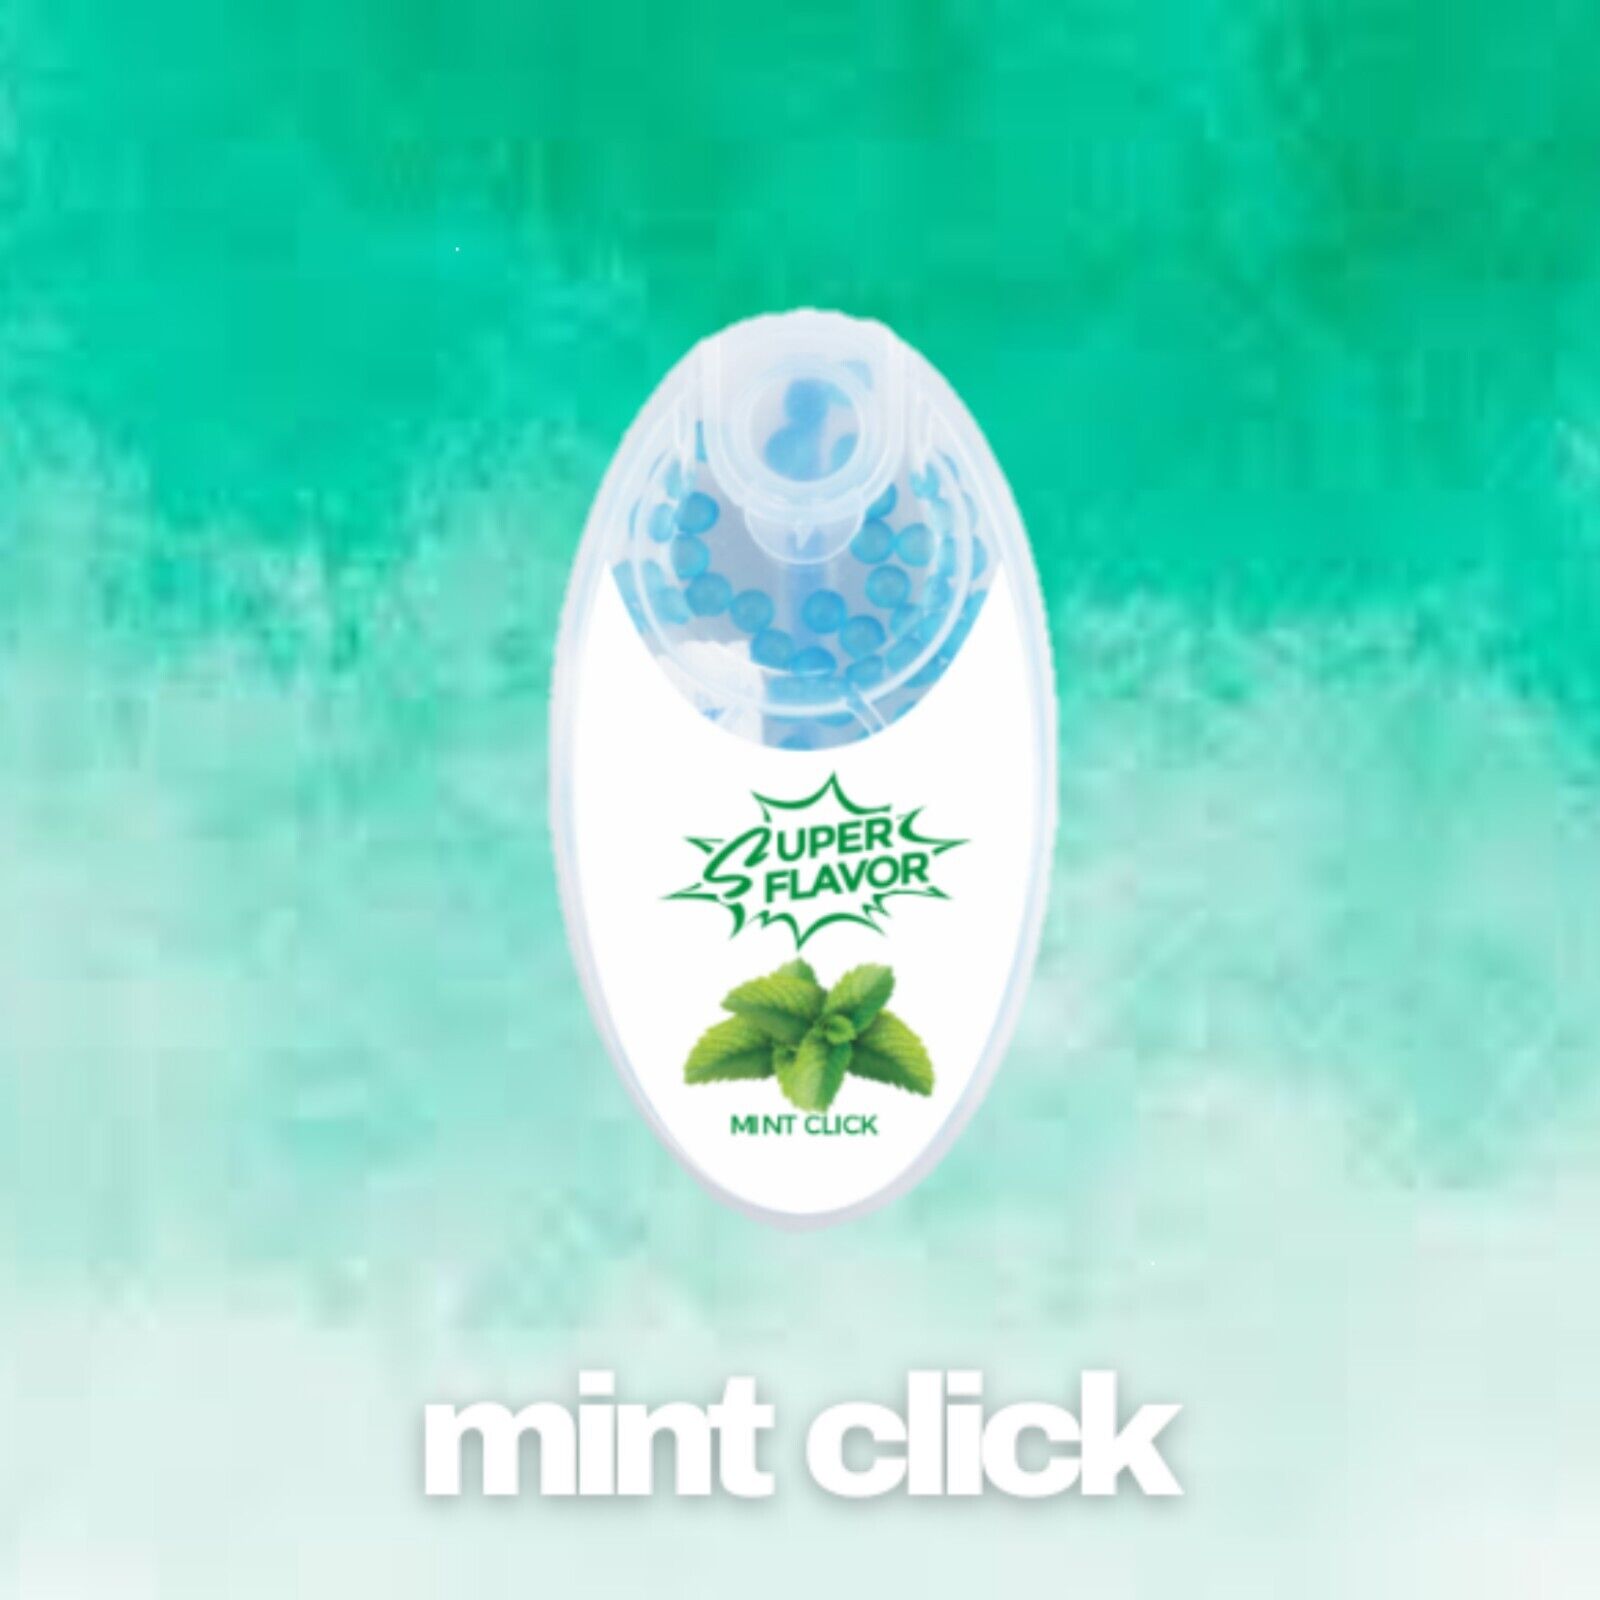 100 Menthol/Mint Click Flavor Balls